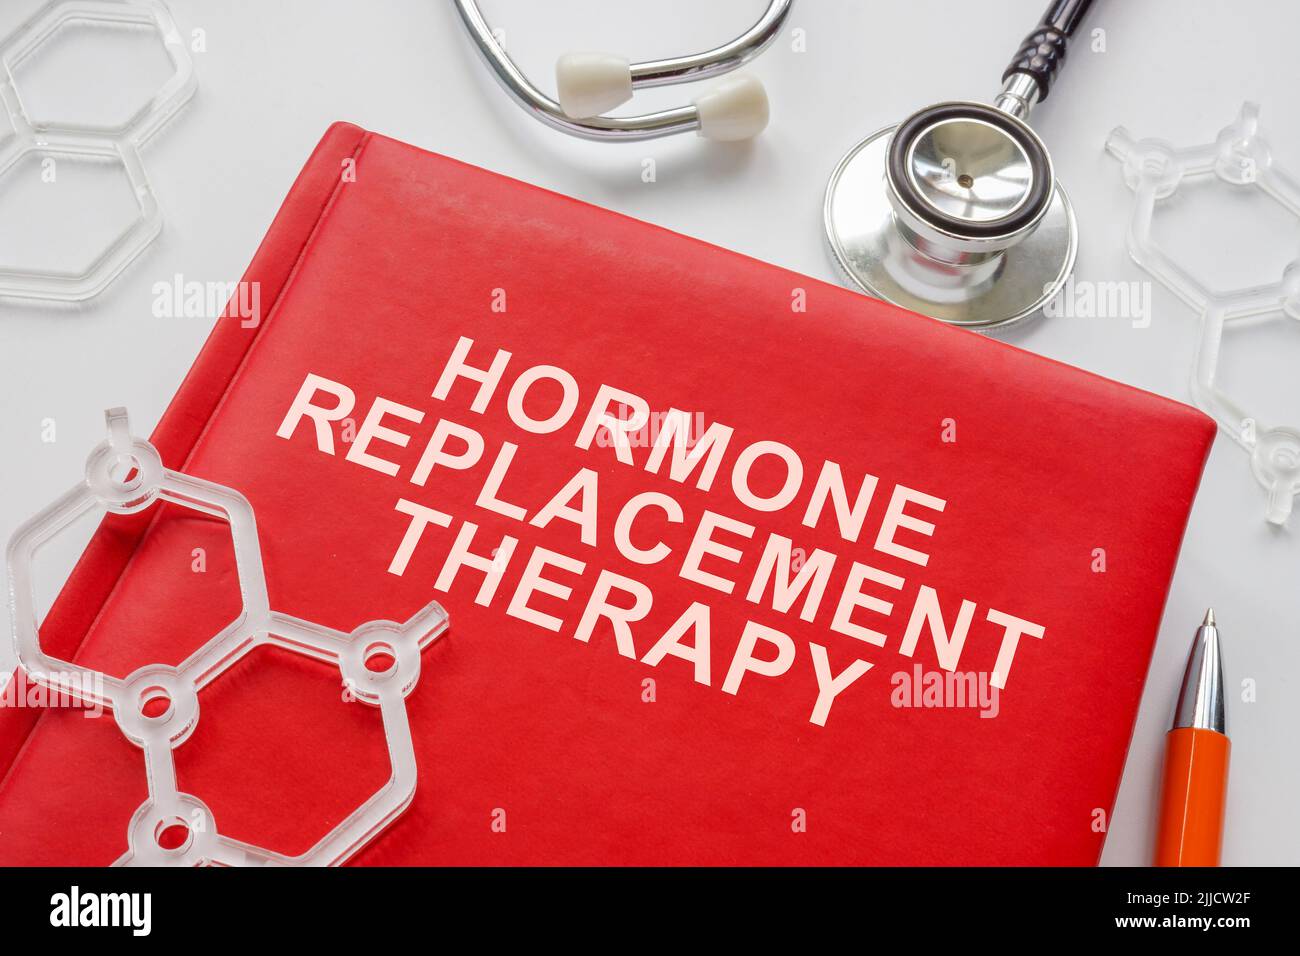 Libro sobre terapia de reemplazo hormonal y modelos de moléculas. Foto de stock